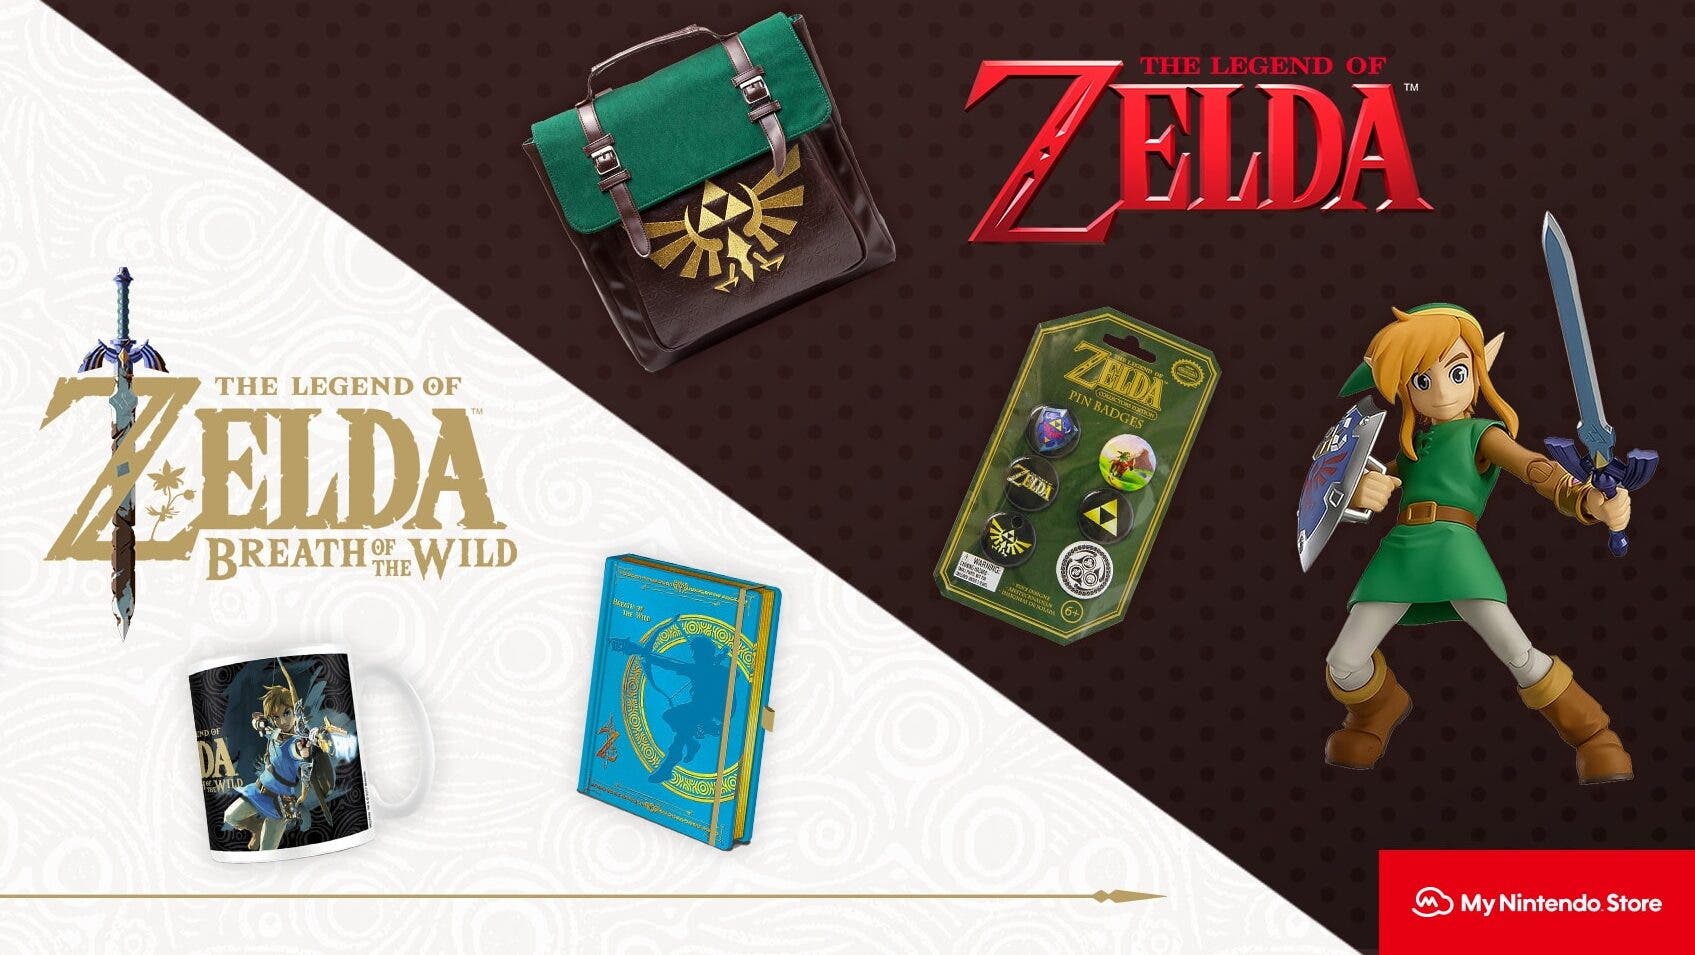 La My Nintendo Store europea actualiza su catálogo con productos de The Legend of Zelda